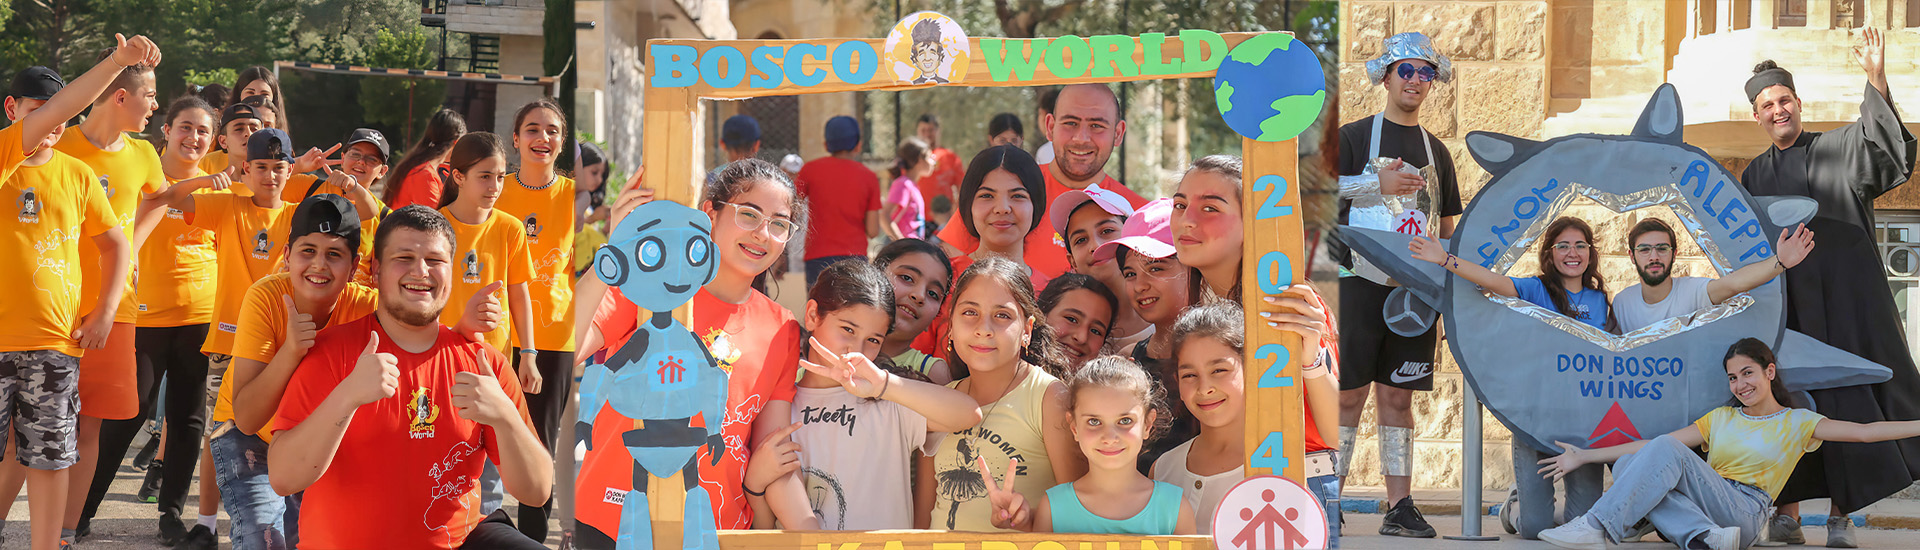 Los menores de Siria disfrutan del verano gracias al campamento salesiano ‘Don Bosco World’